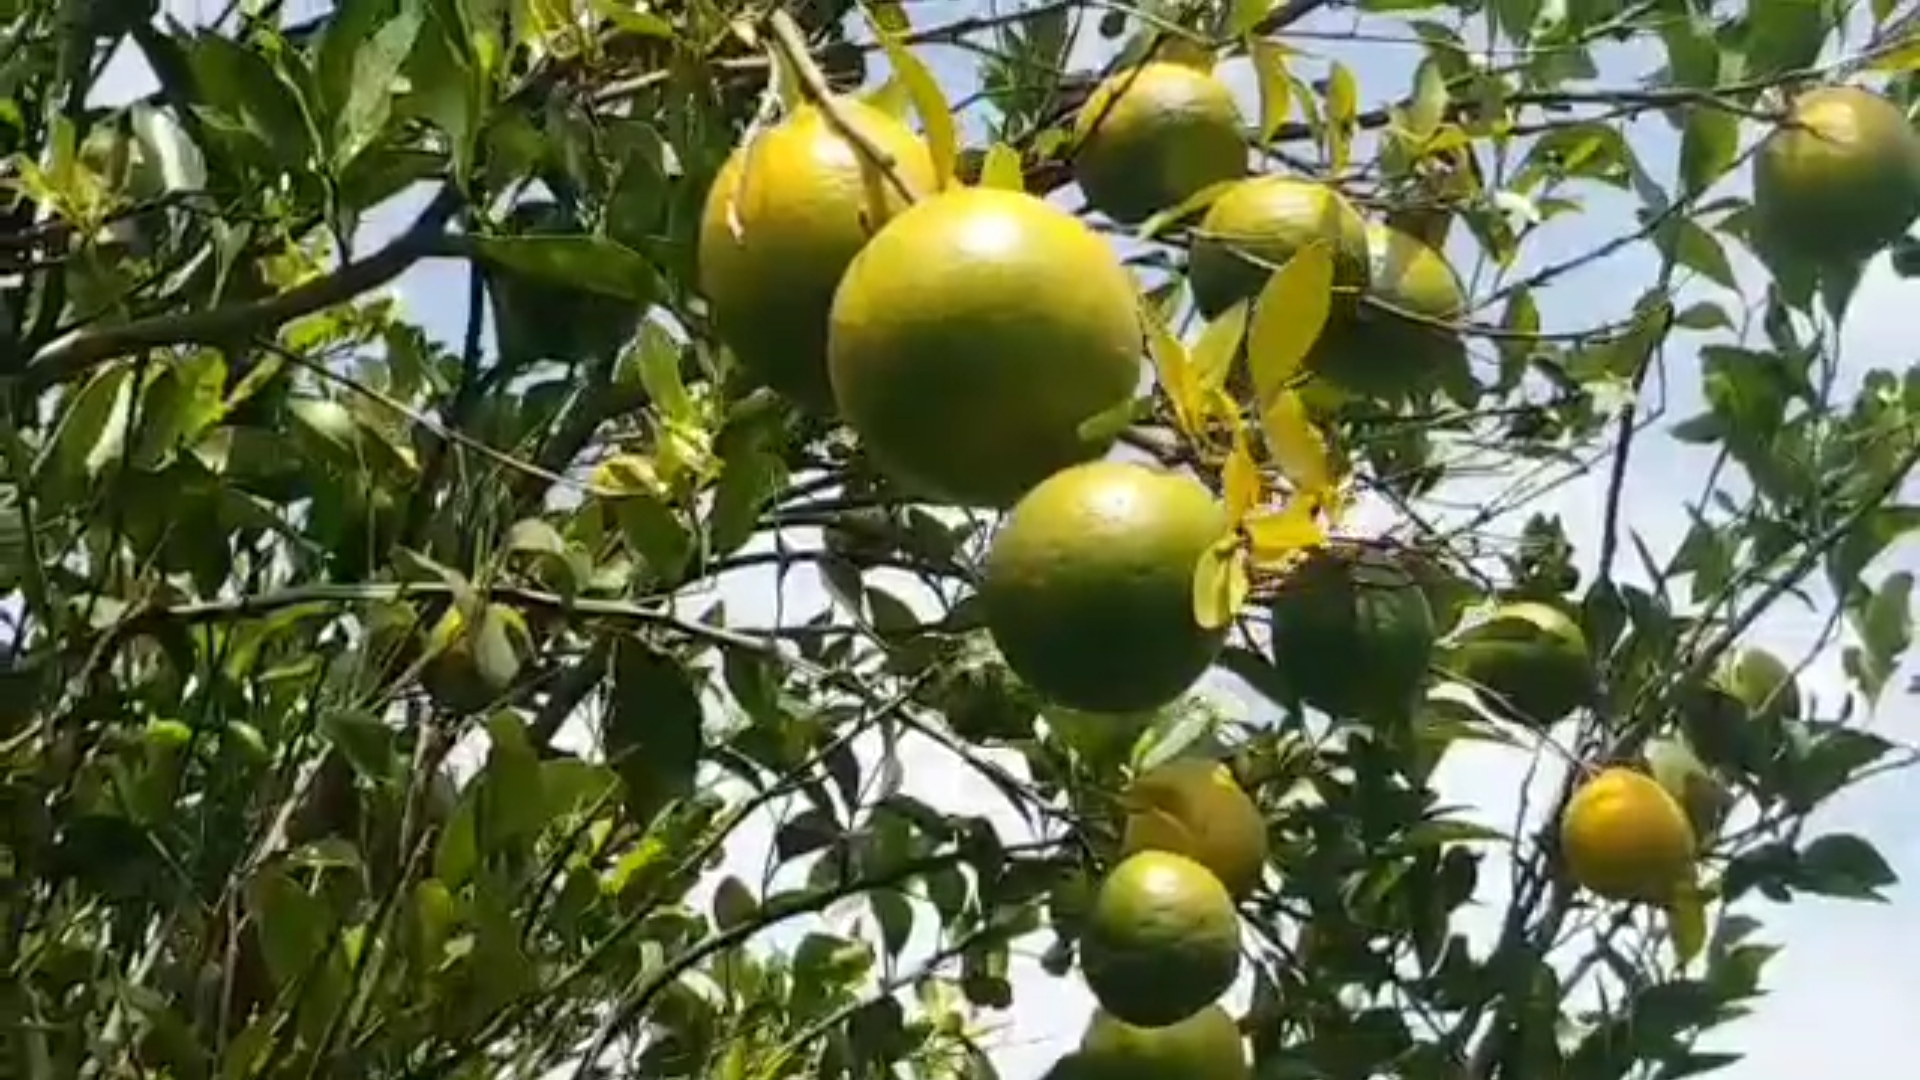 Unseasonal rain threat to orange crop in Chhindwara farmers worried